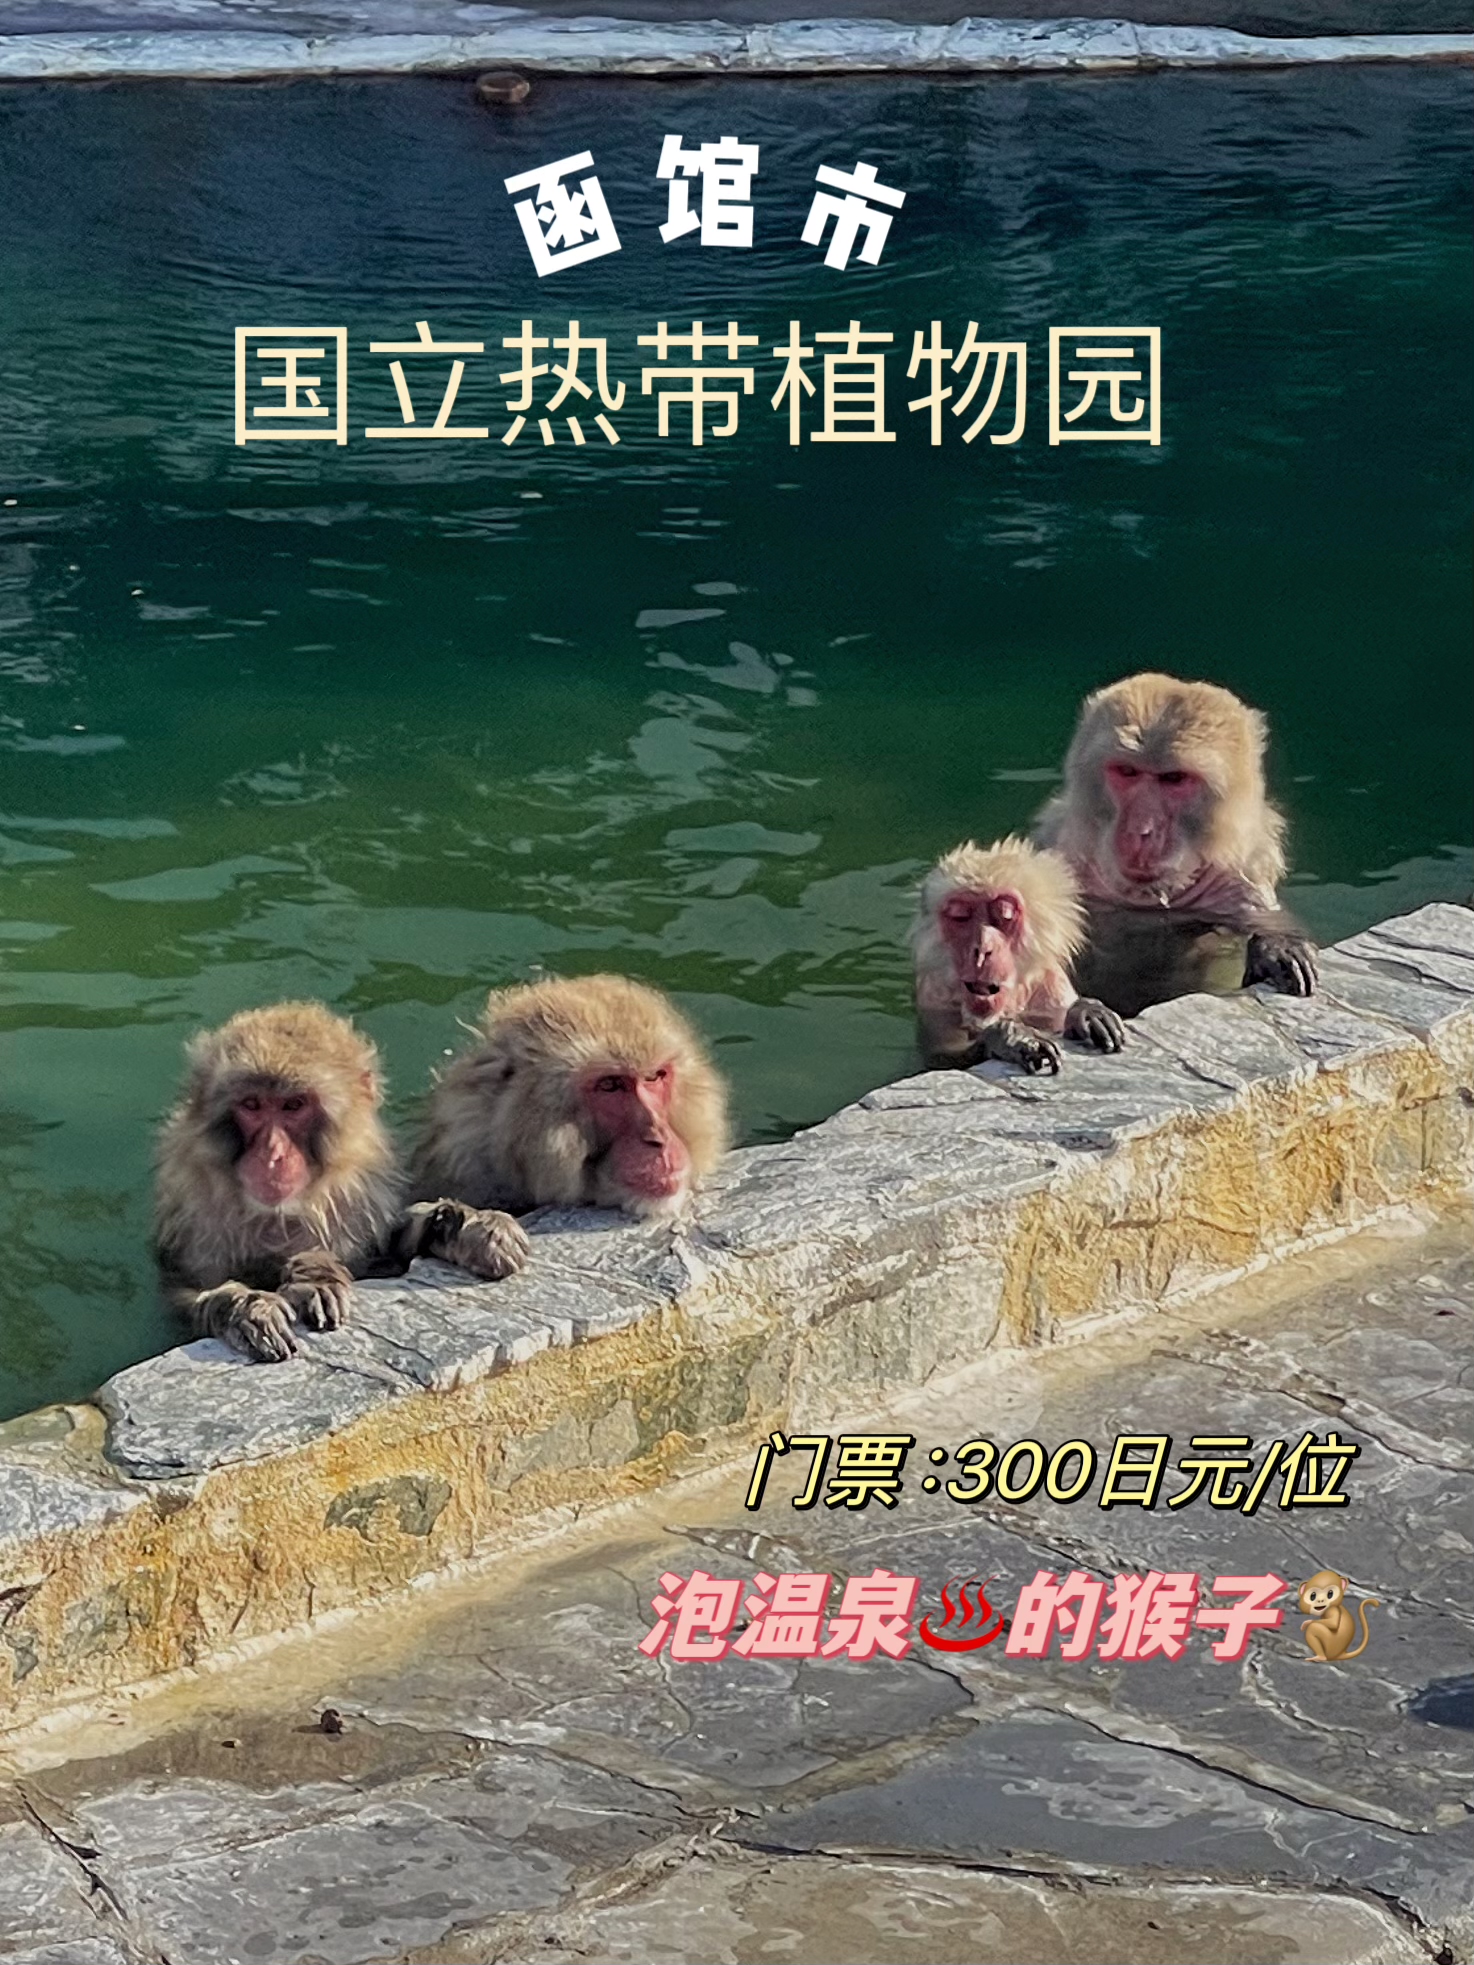 就是想看看泡温泉的猴子到底有多惬意